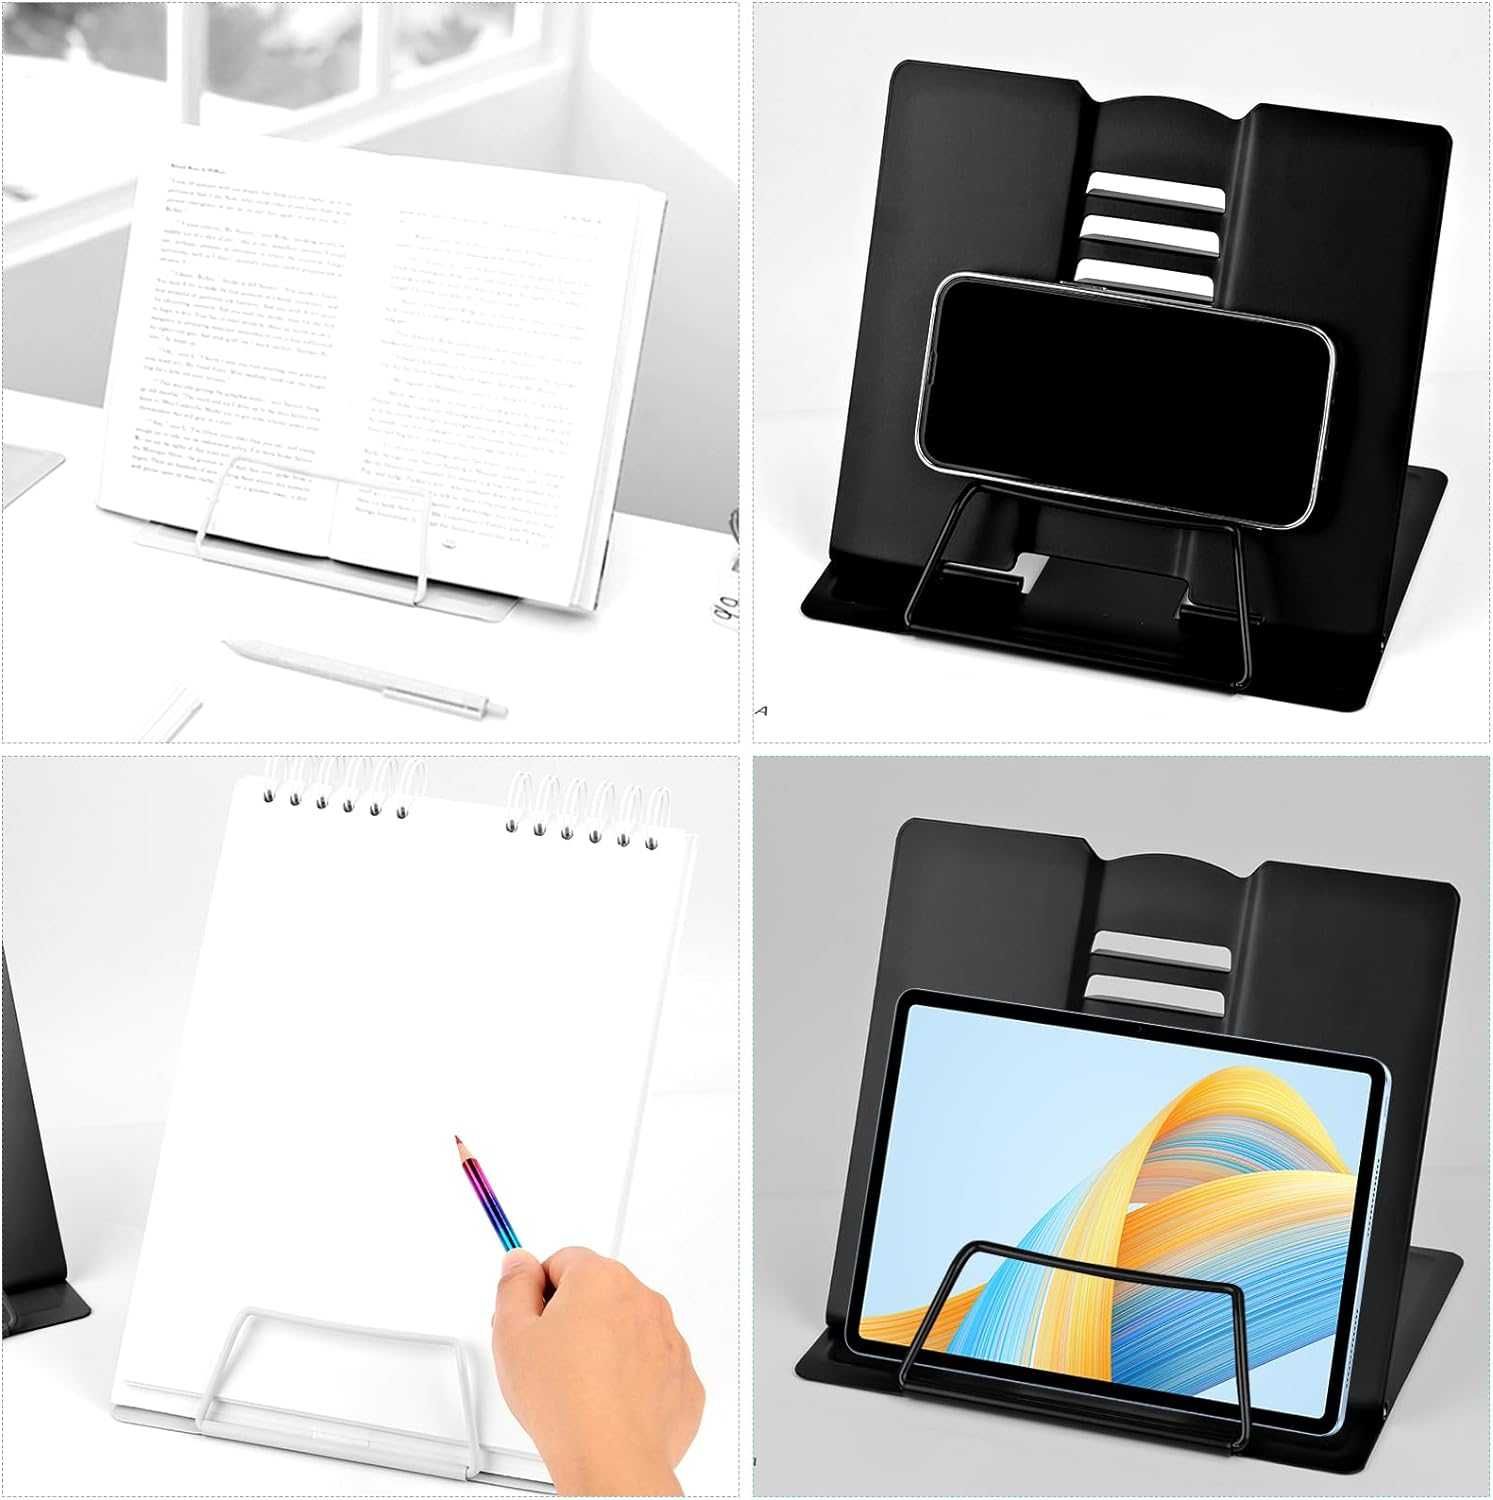 Suporte de livros e tablet ajustável e portátil -20,8 x 18,5 cm - NOVO